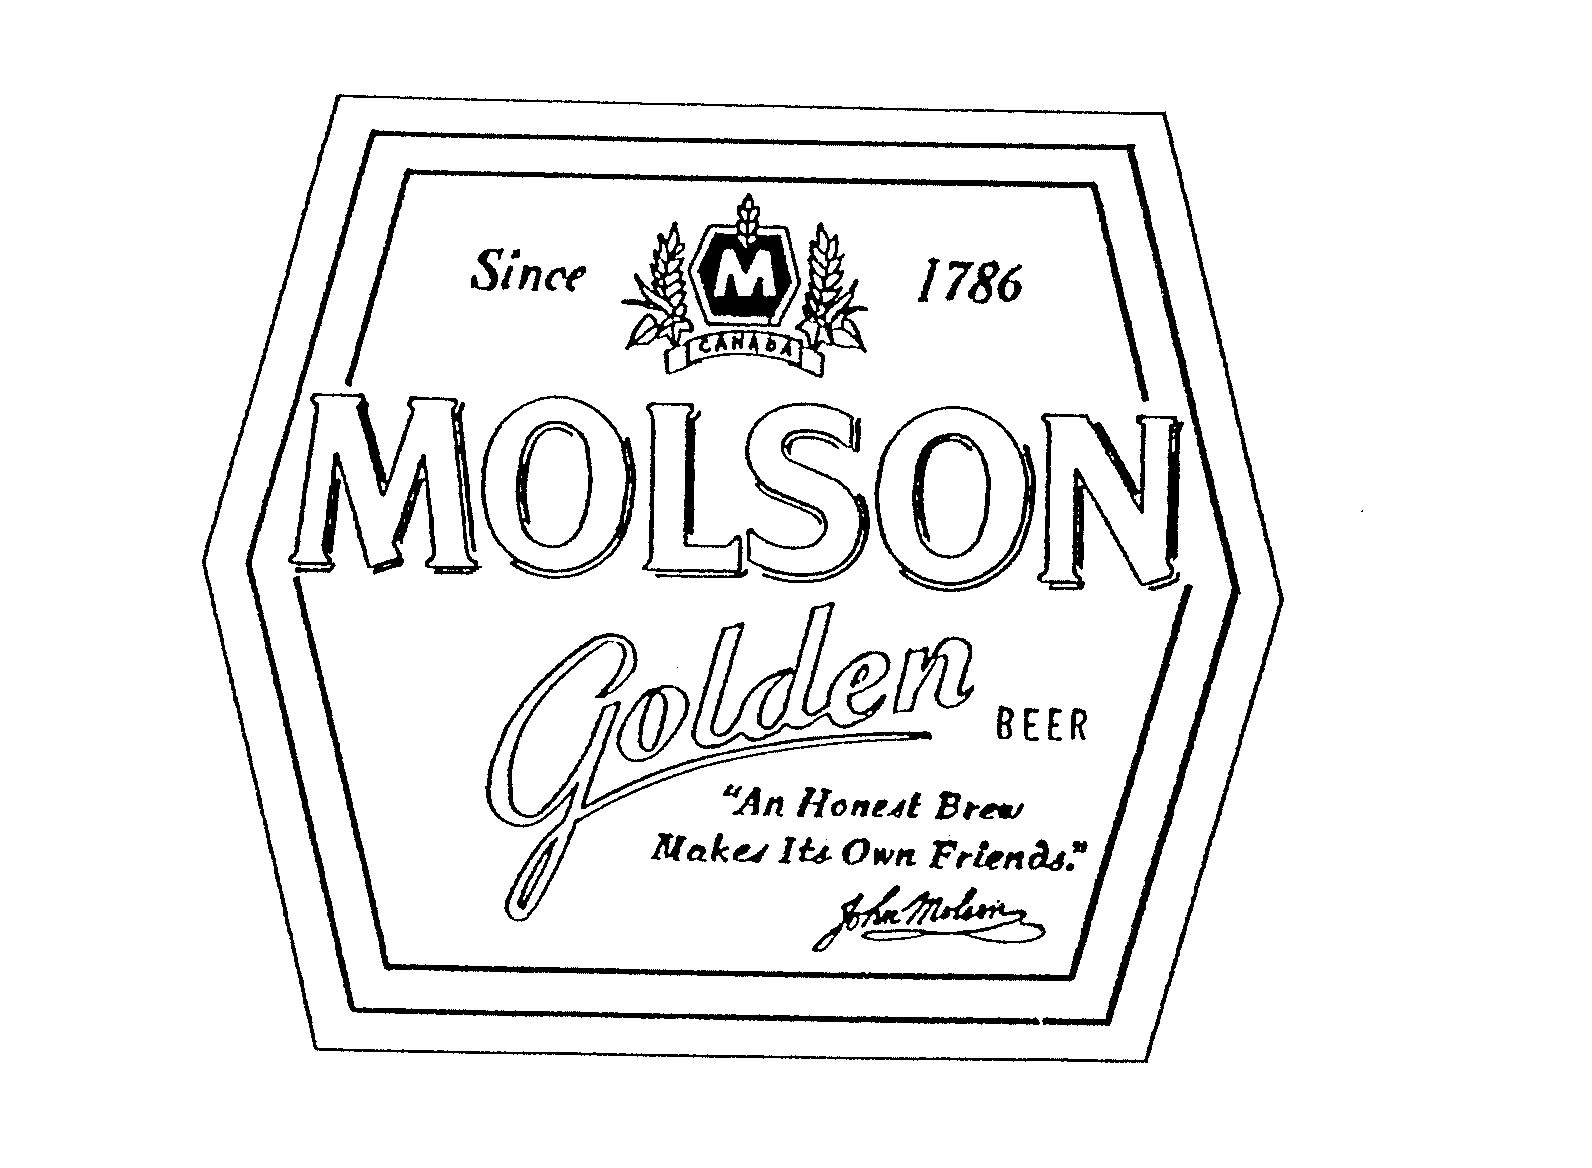  MOLSON GOLDEN BEER M CANADA SINCE 1786 "AN HONEST BREW MAKES ITS OWN FRIENDS." JOHN MOLSON